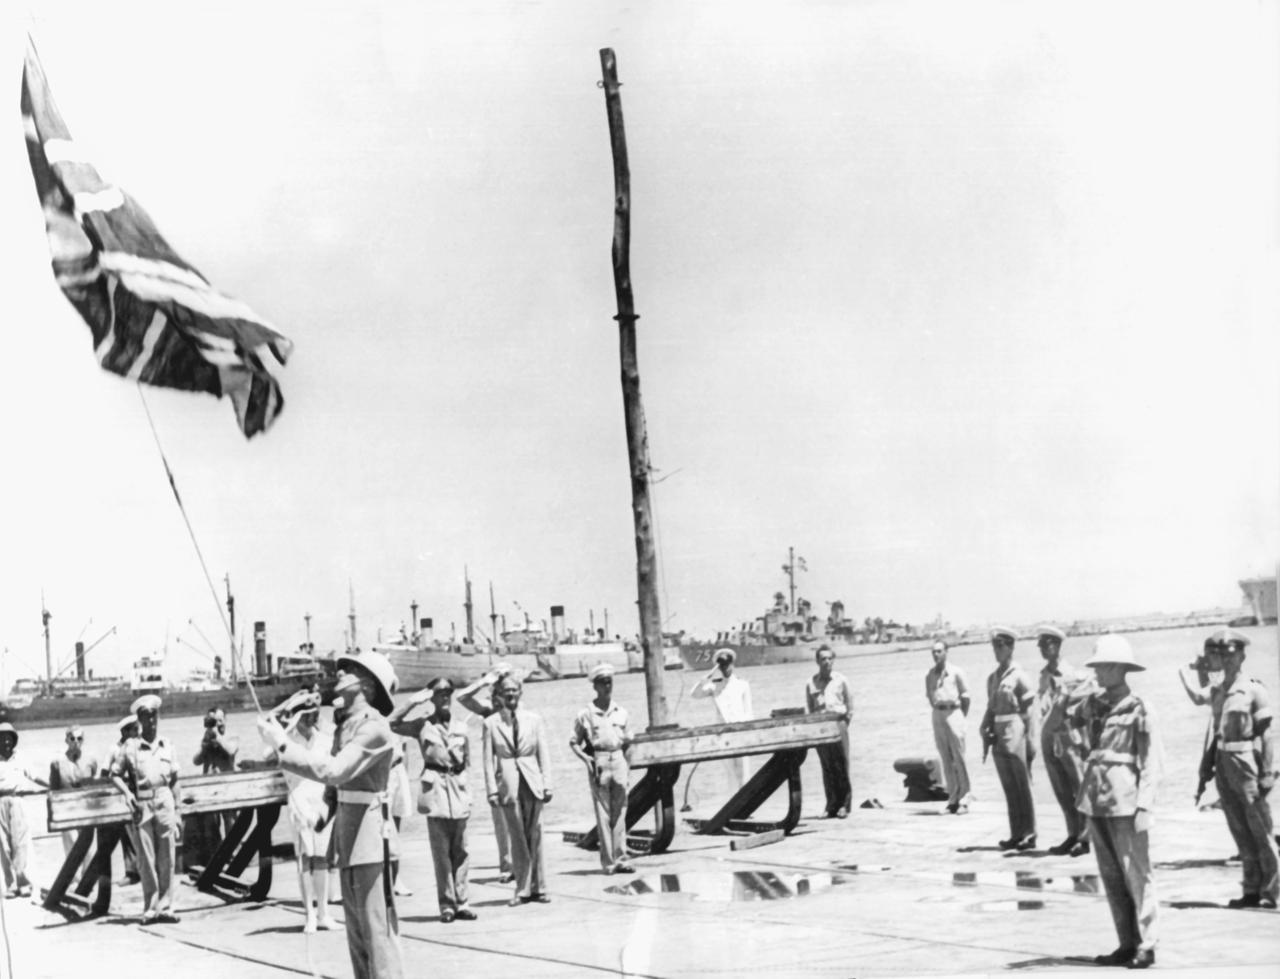 Am 30. Juni 1948 um 12:45 Uhr wird im Hafen von Haifa die britische Flagge, der "Union Jack", endgültig eingezogen.